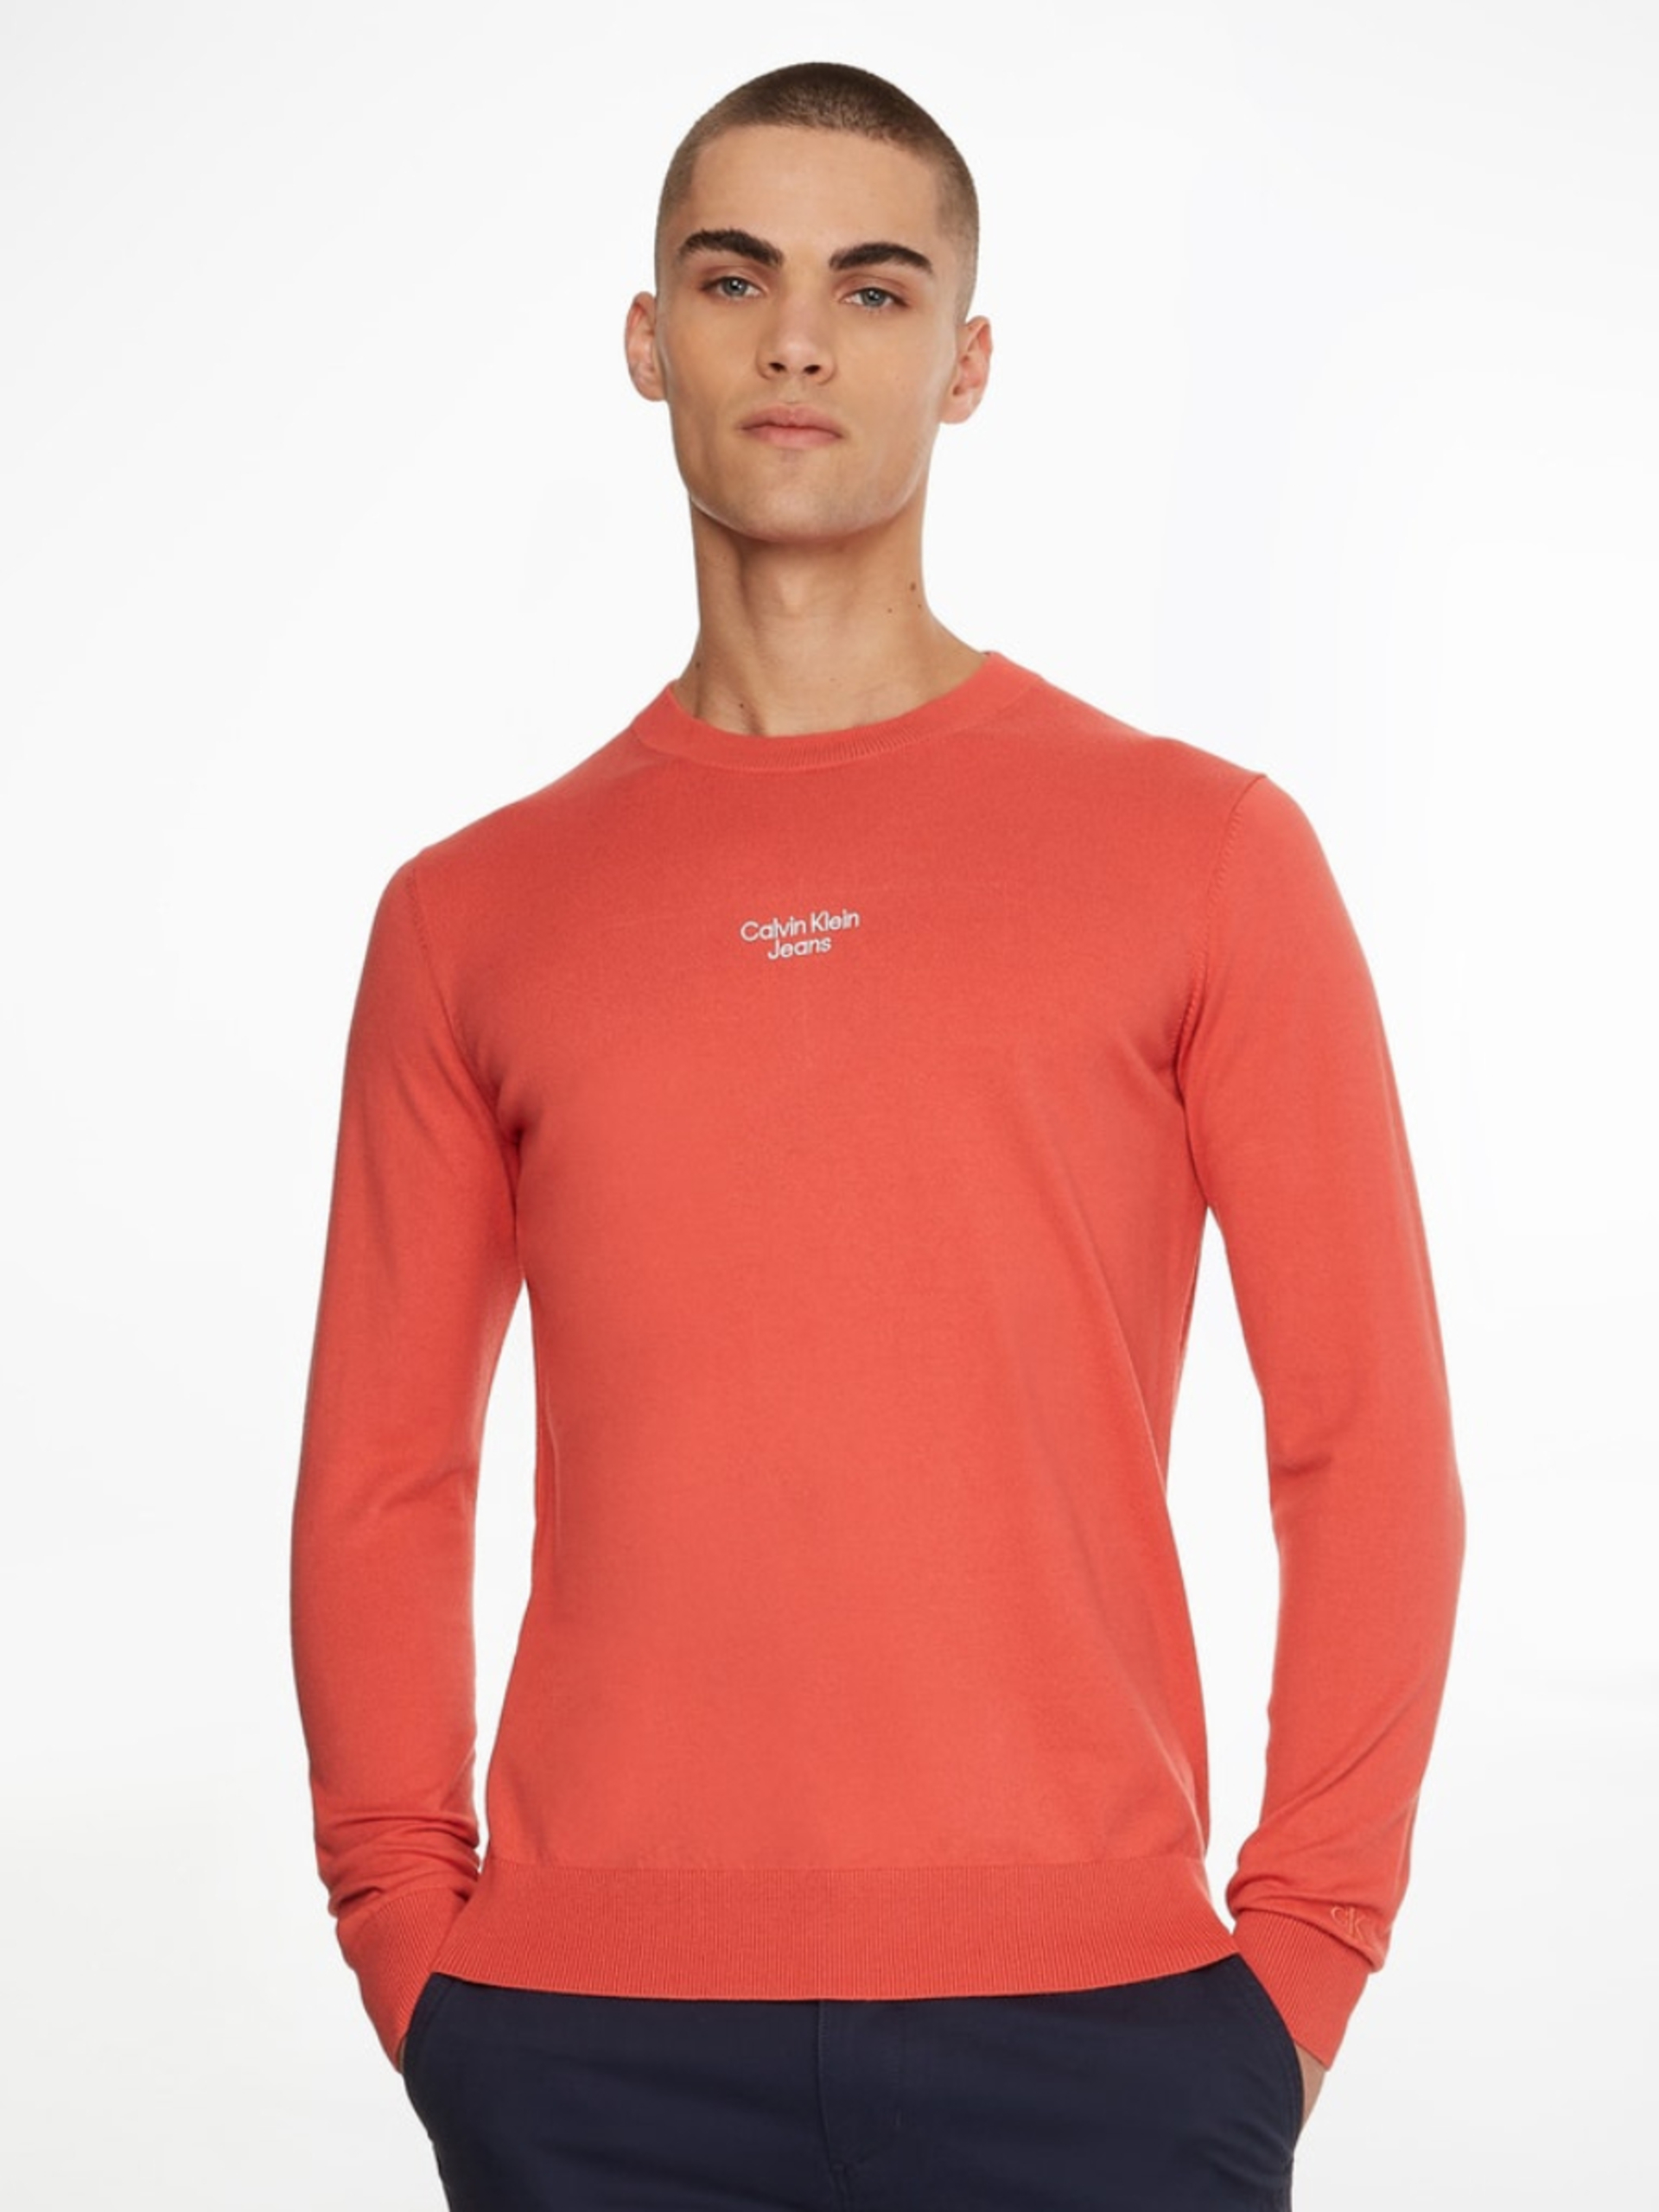 Calvin Klein pánský oranžový svetr - XL (XLV)